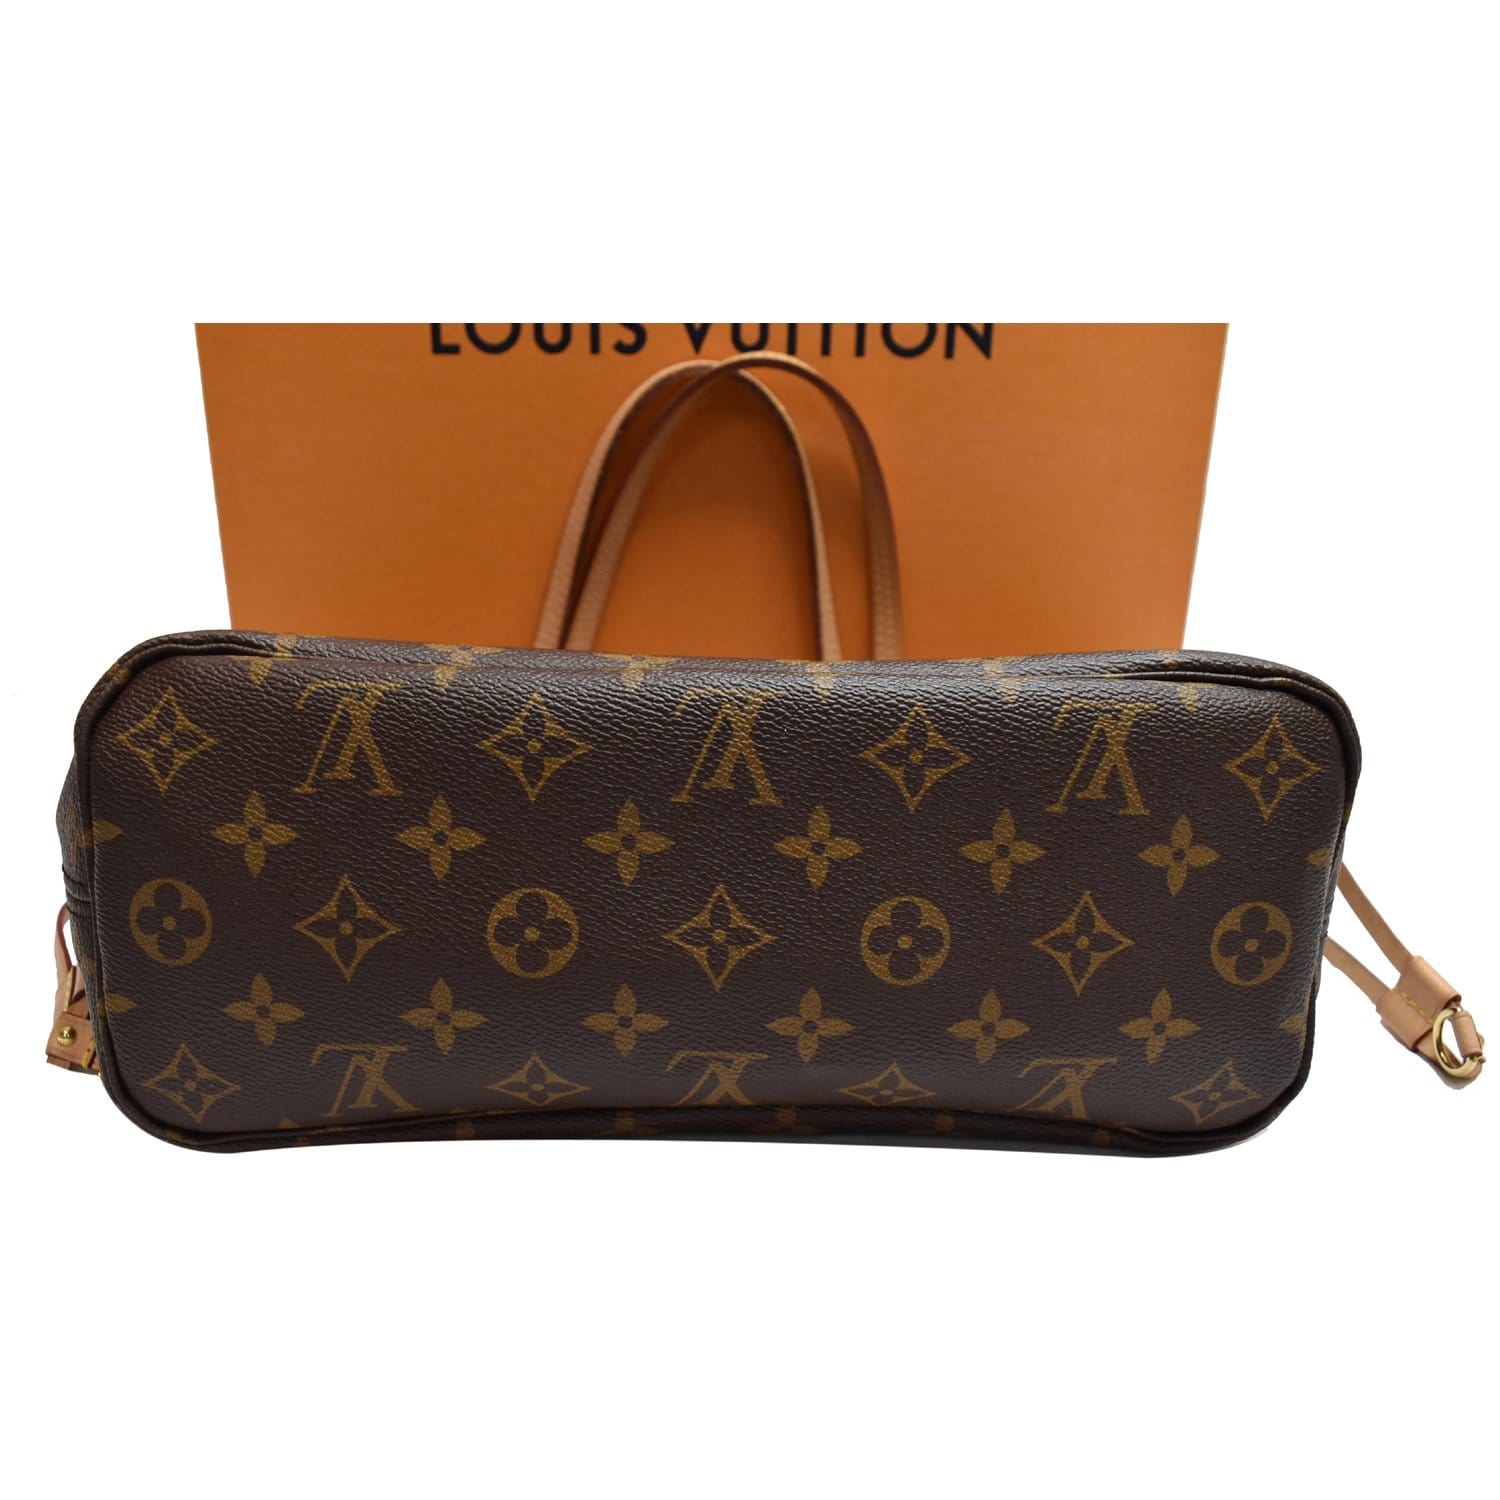 Louis Vuitton, Bags, Authentic Louis Vuitton Neverfull Pm